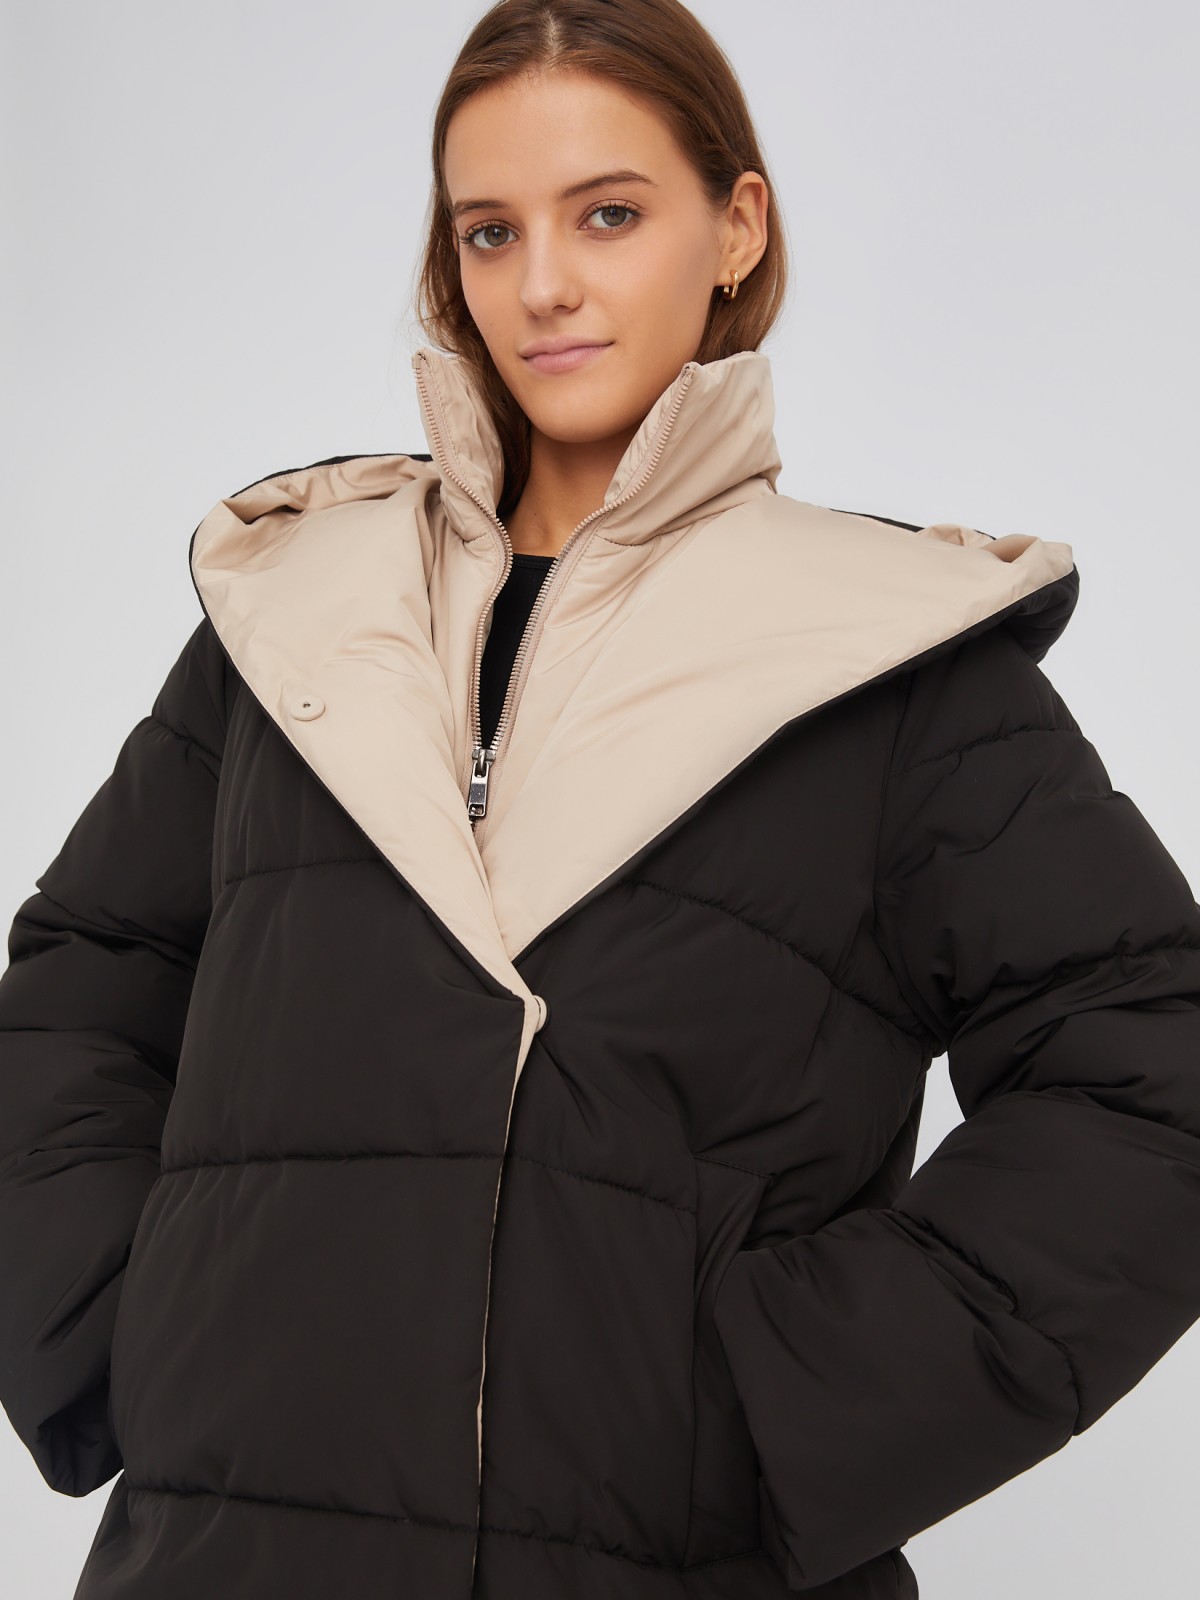 Тёплая стёганая дутая куртка с капюшоном и вшитой манишкой на молнии zolla 02334510L034, цвет черный, размер XS - фото 3